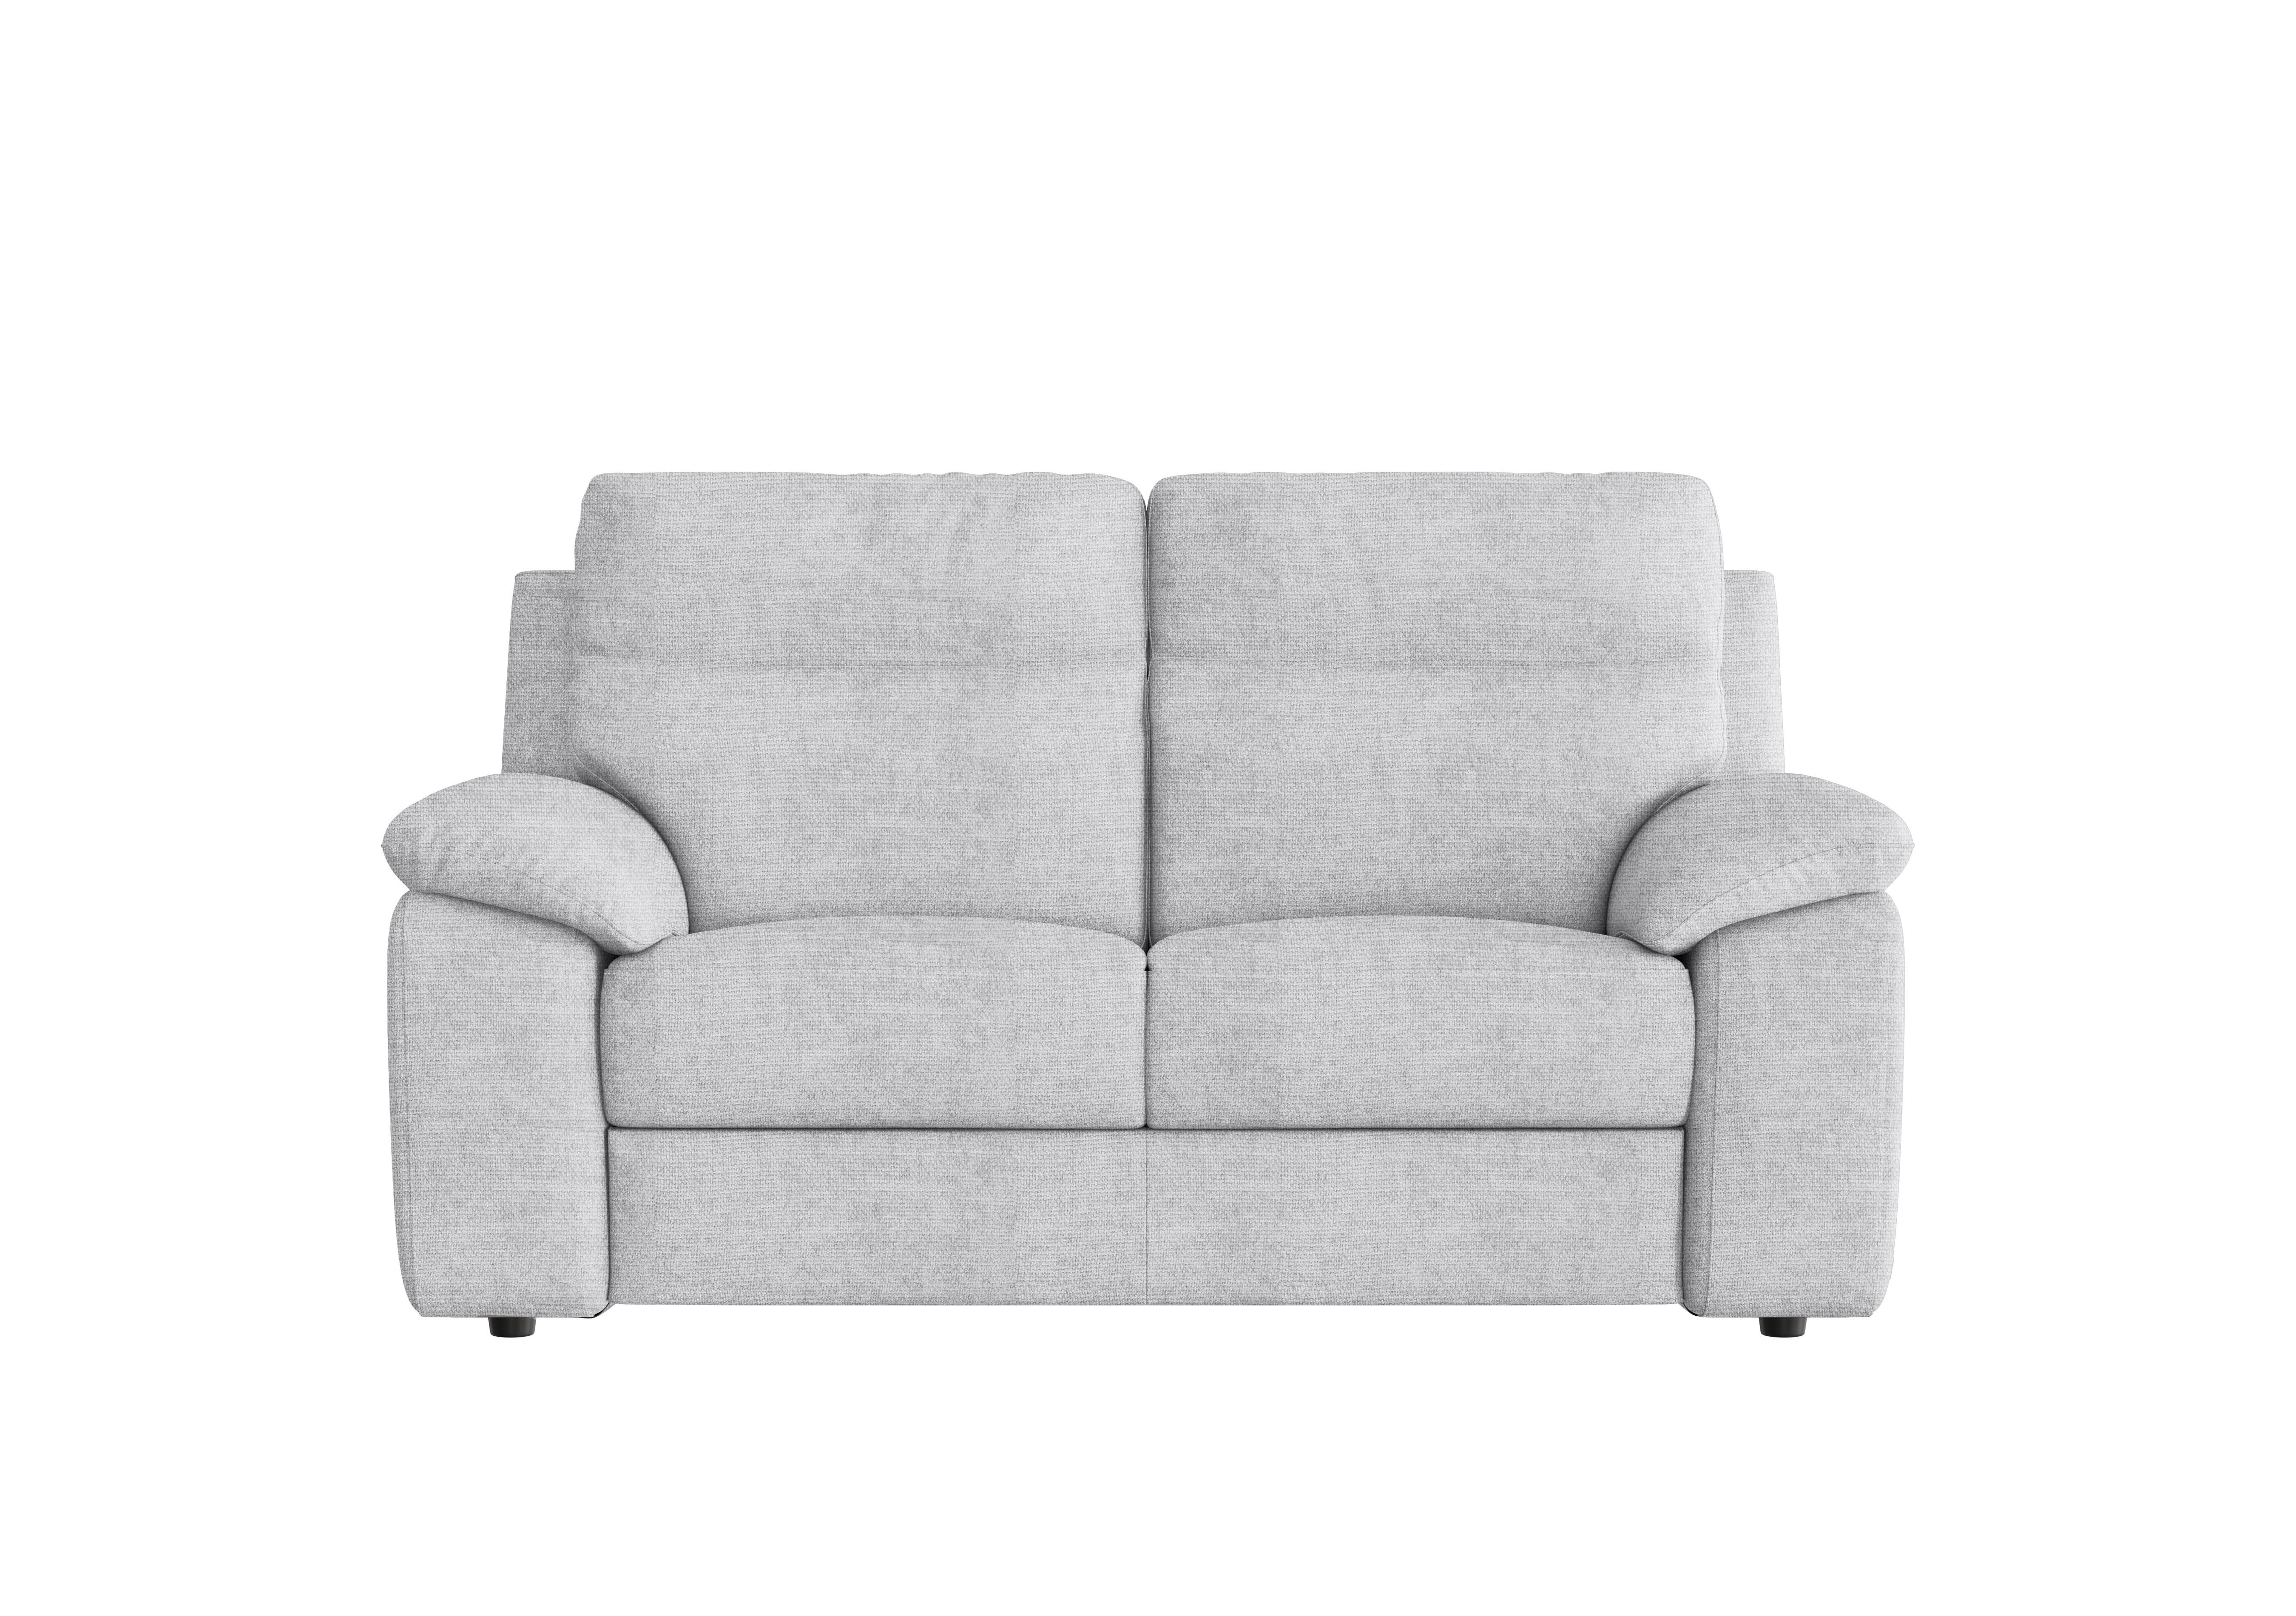 Pepino 2 Seater Fabric Sofa in Baobab Ghiaccio 516 on Furniture Village